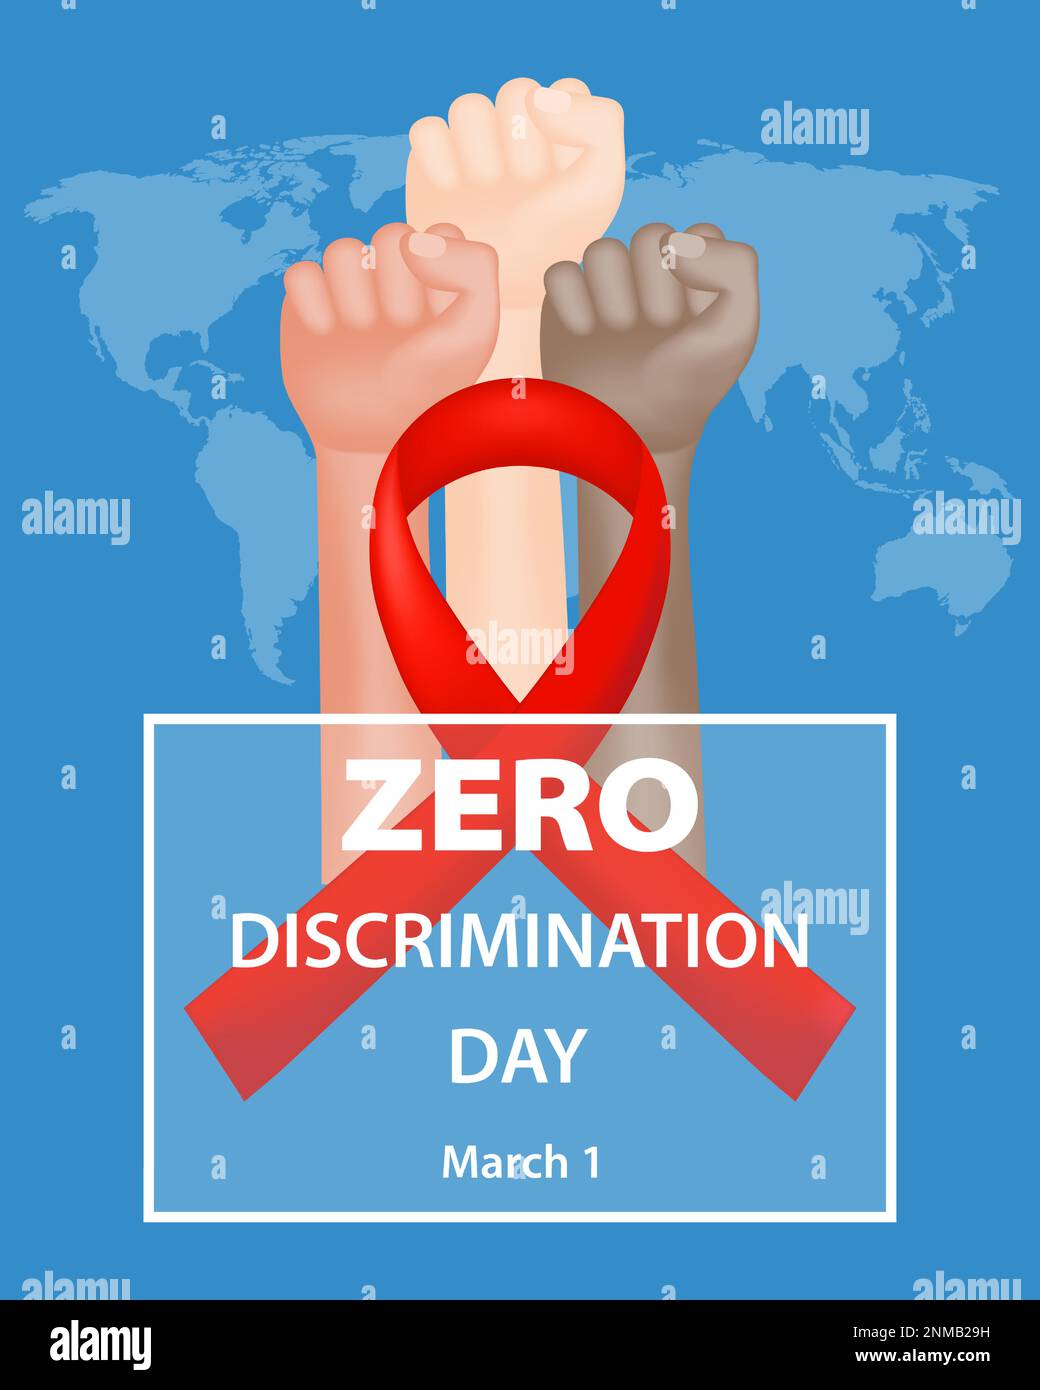 Feiern Sie den Zero-Discrimination-Tag mit einem Banner mit einem roten Band, geballten Fäusten von Menschen verschiedener Rassen und einer Weltkarte auf einem blauen Hintergrund Stock Vektor